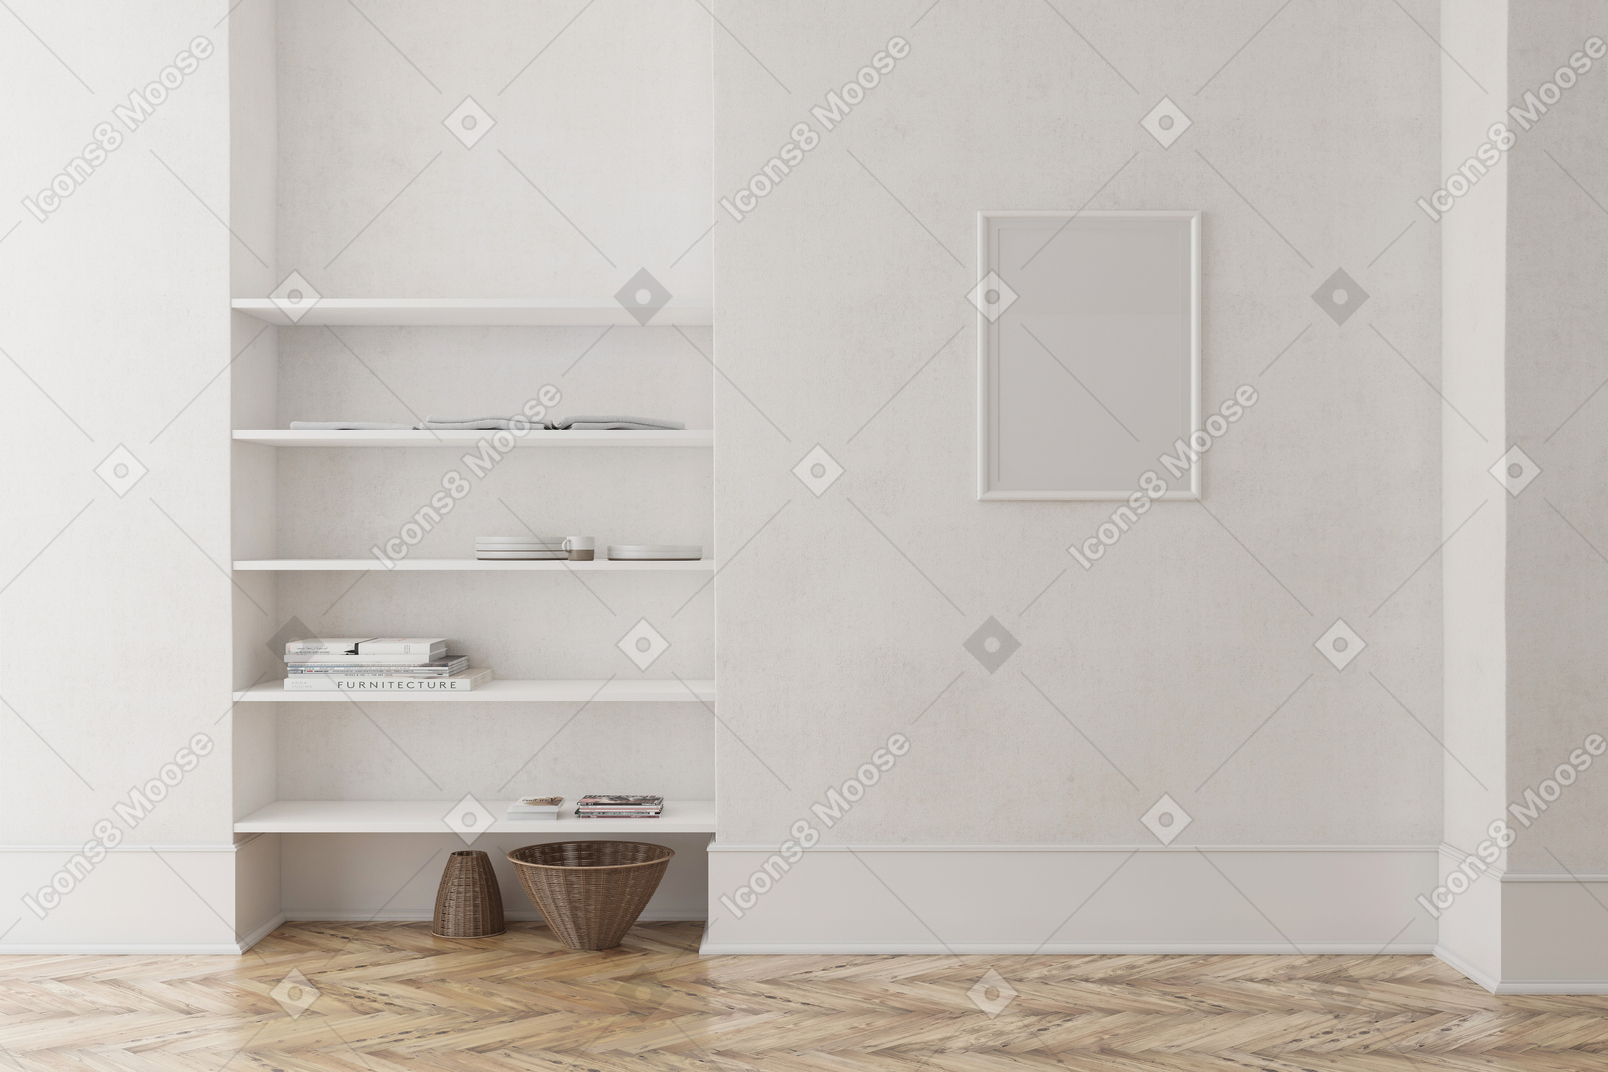 빌트인 선반 유닛과 빈 그림이 있는 흰색 방